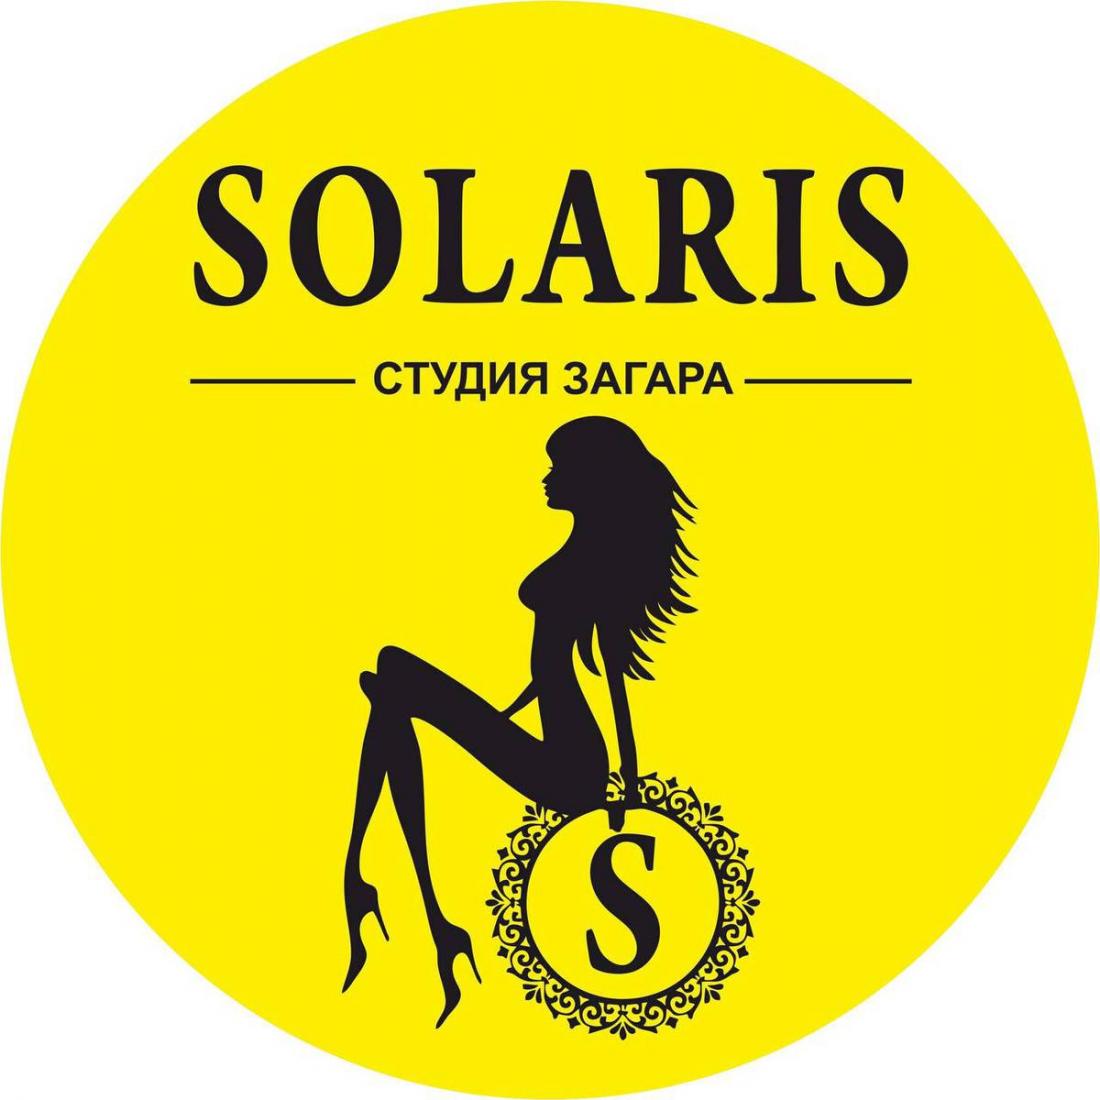 Вертикальный солярий от 0,71 р/мин в студии загара "Solaris" в Могилеве